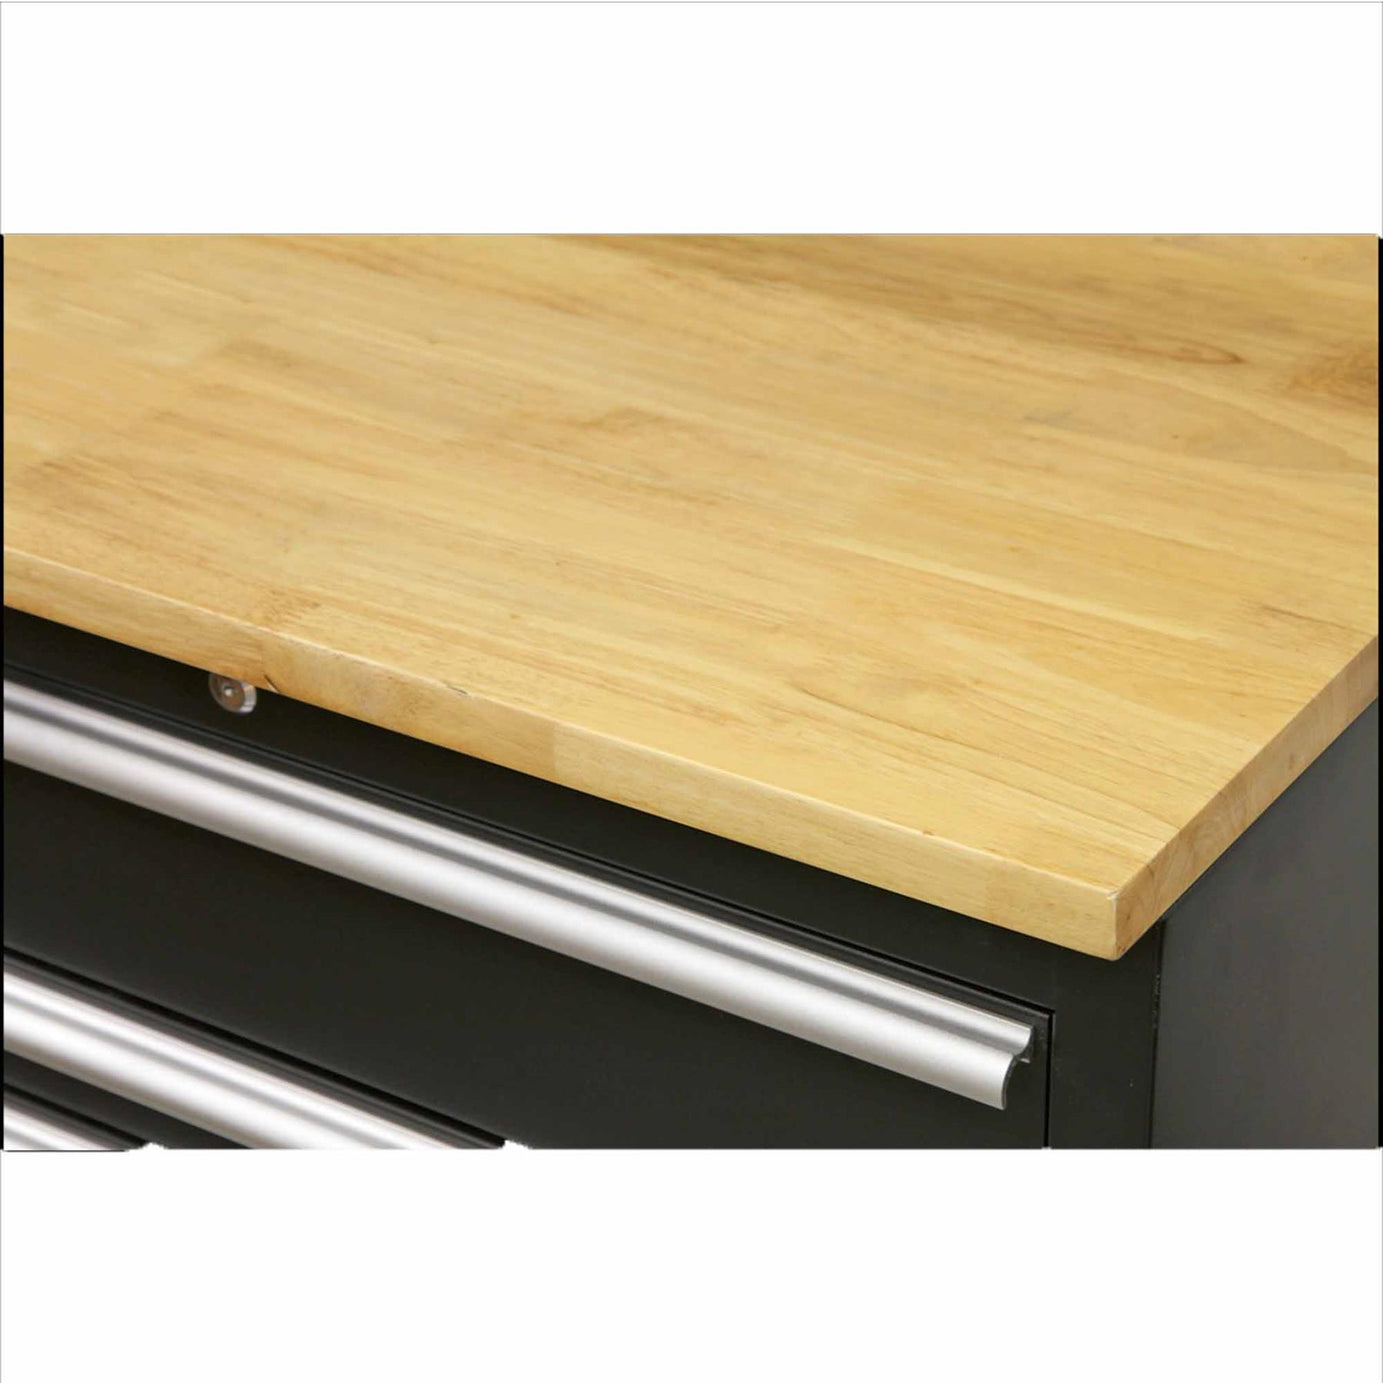 Sealey Hardwood Worktop 1550mm Floor Cabinets